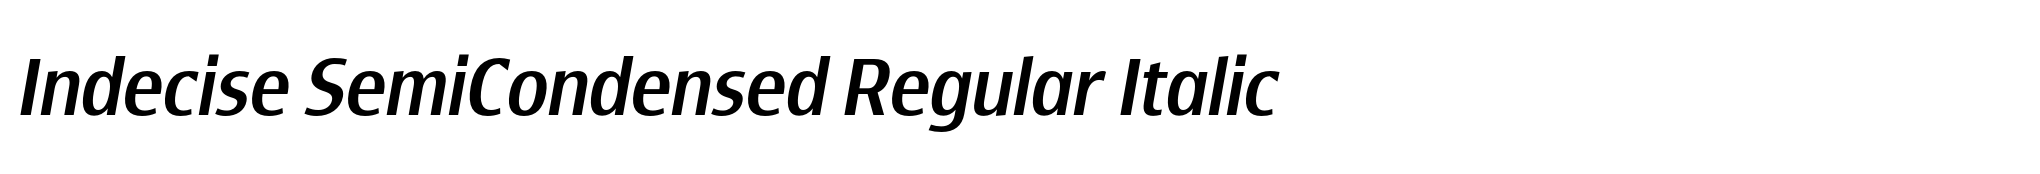 Indecise SemiCondensed Regular Italic image